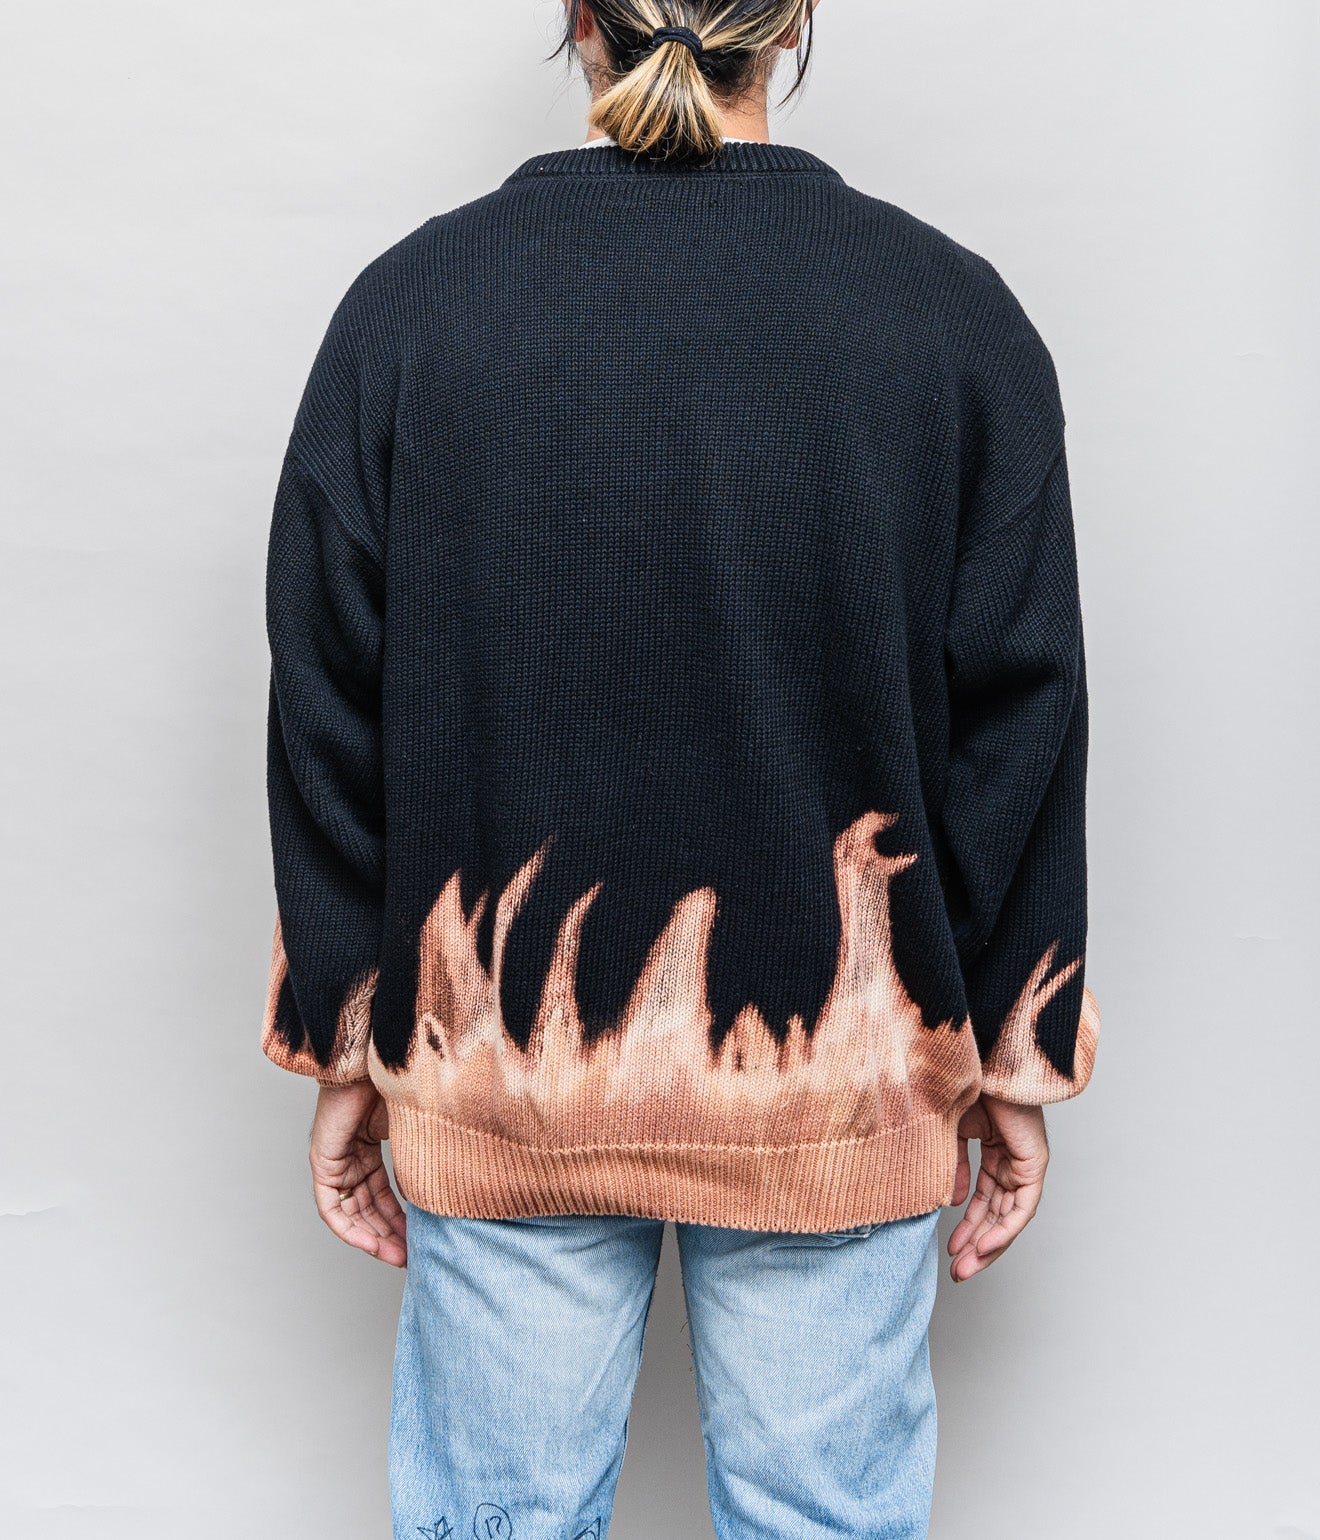 r "Tie-dye cotton sweater fire pattern" Black 4 - WEAREALLANIMALS